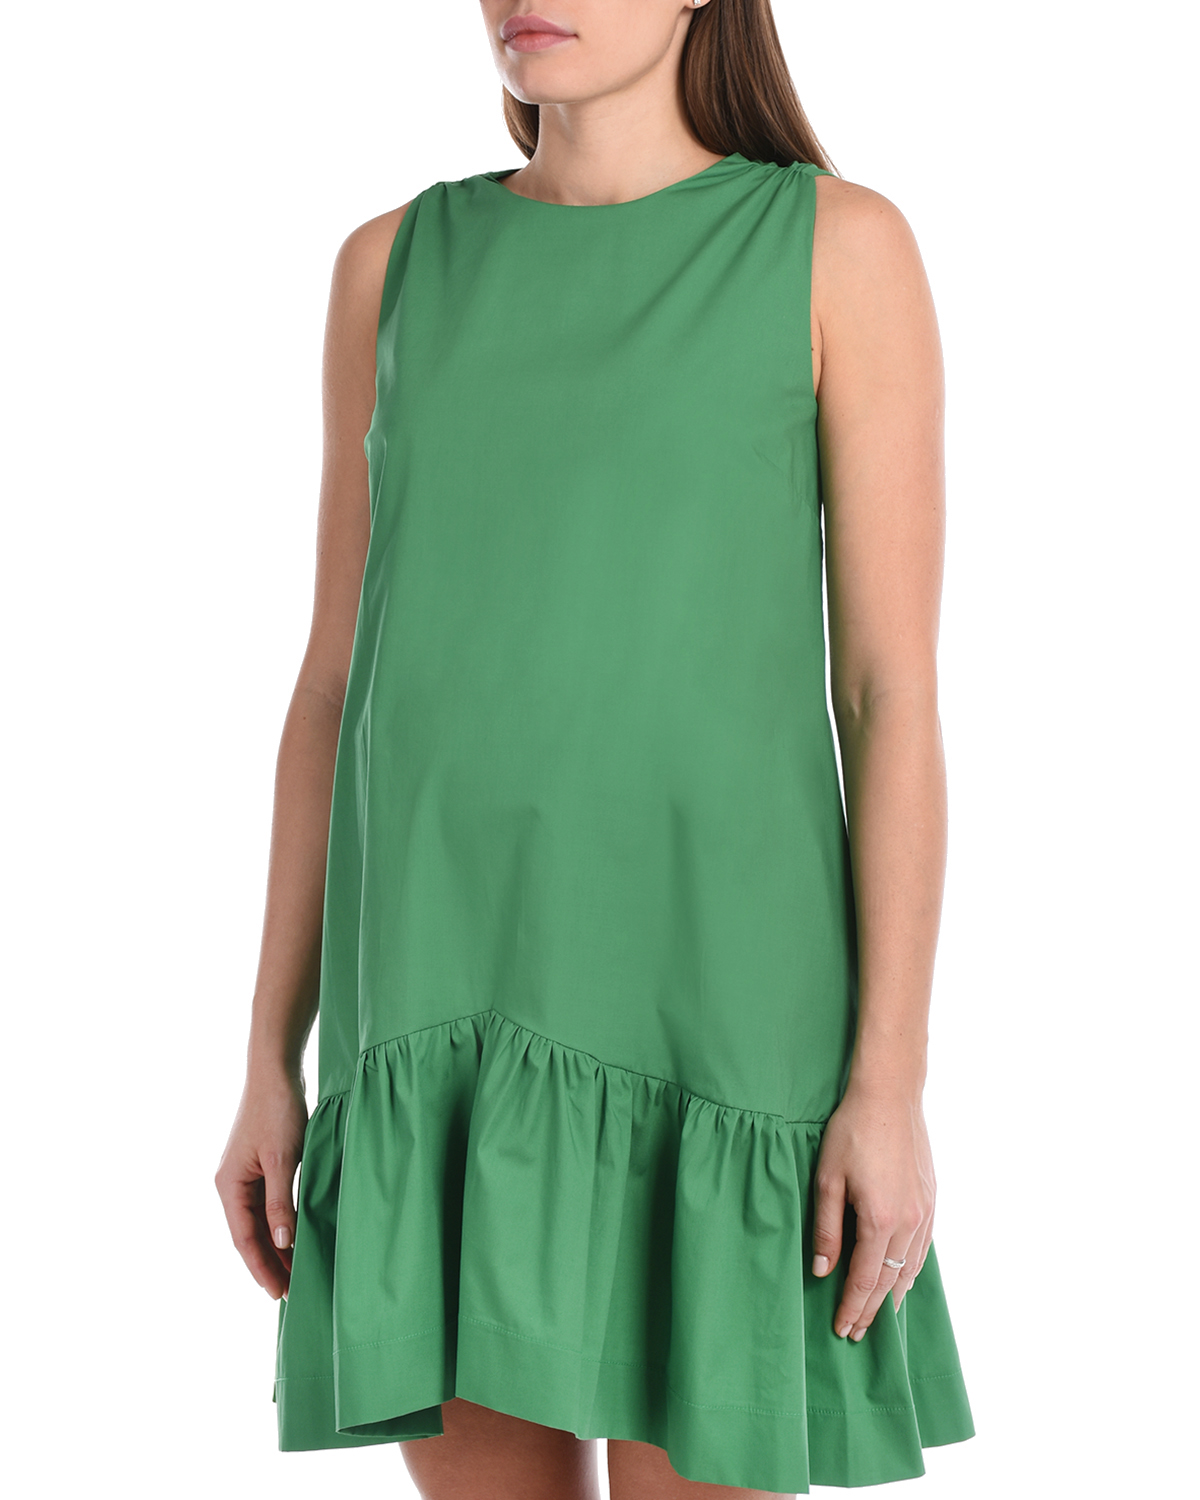 Зеленое платье с бантами на спинке Attesa, размер 40, цвет зеленый - фото 9